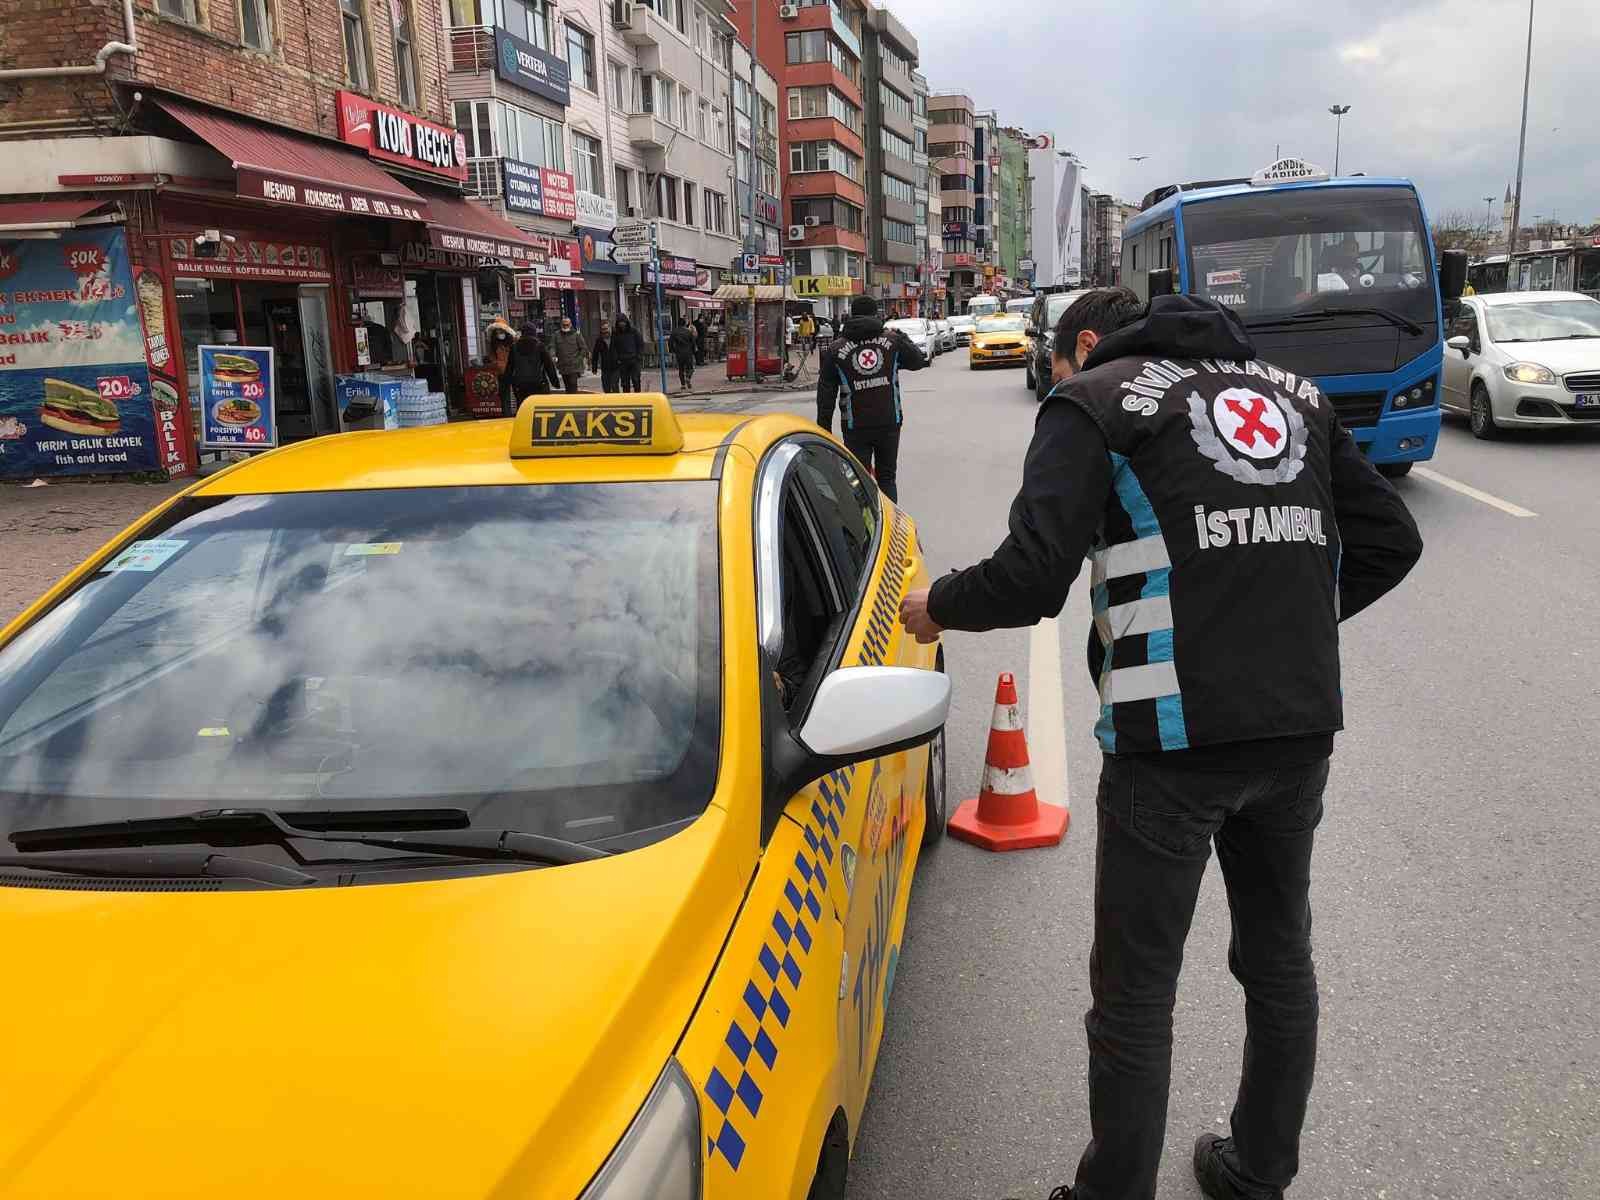 Kadıköy’de trafik polis ekipleri, ticari taksilere yönelik denetim yaptı. Denetimde emniyet kemeri takmadığı tespit edilen 8 taksi sürücüsüne ...